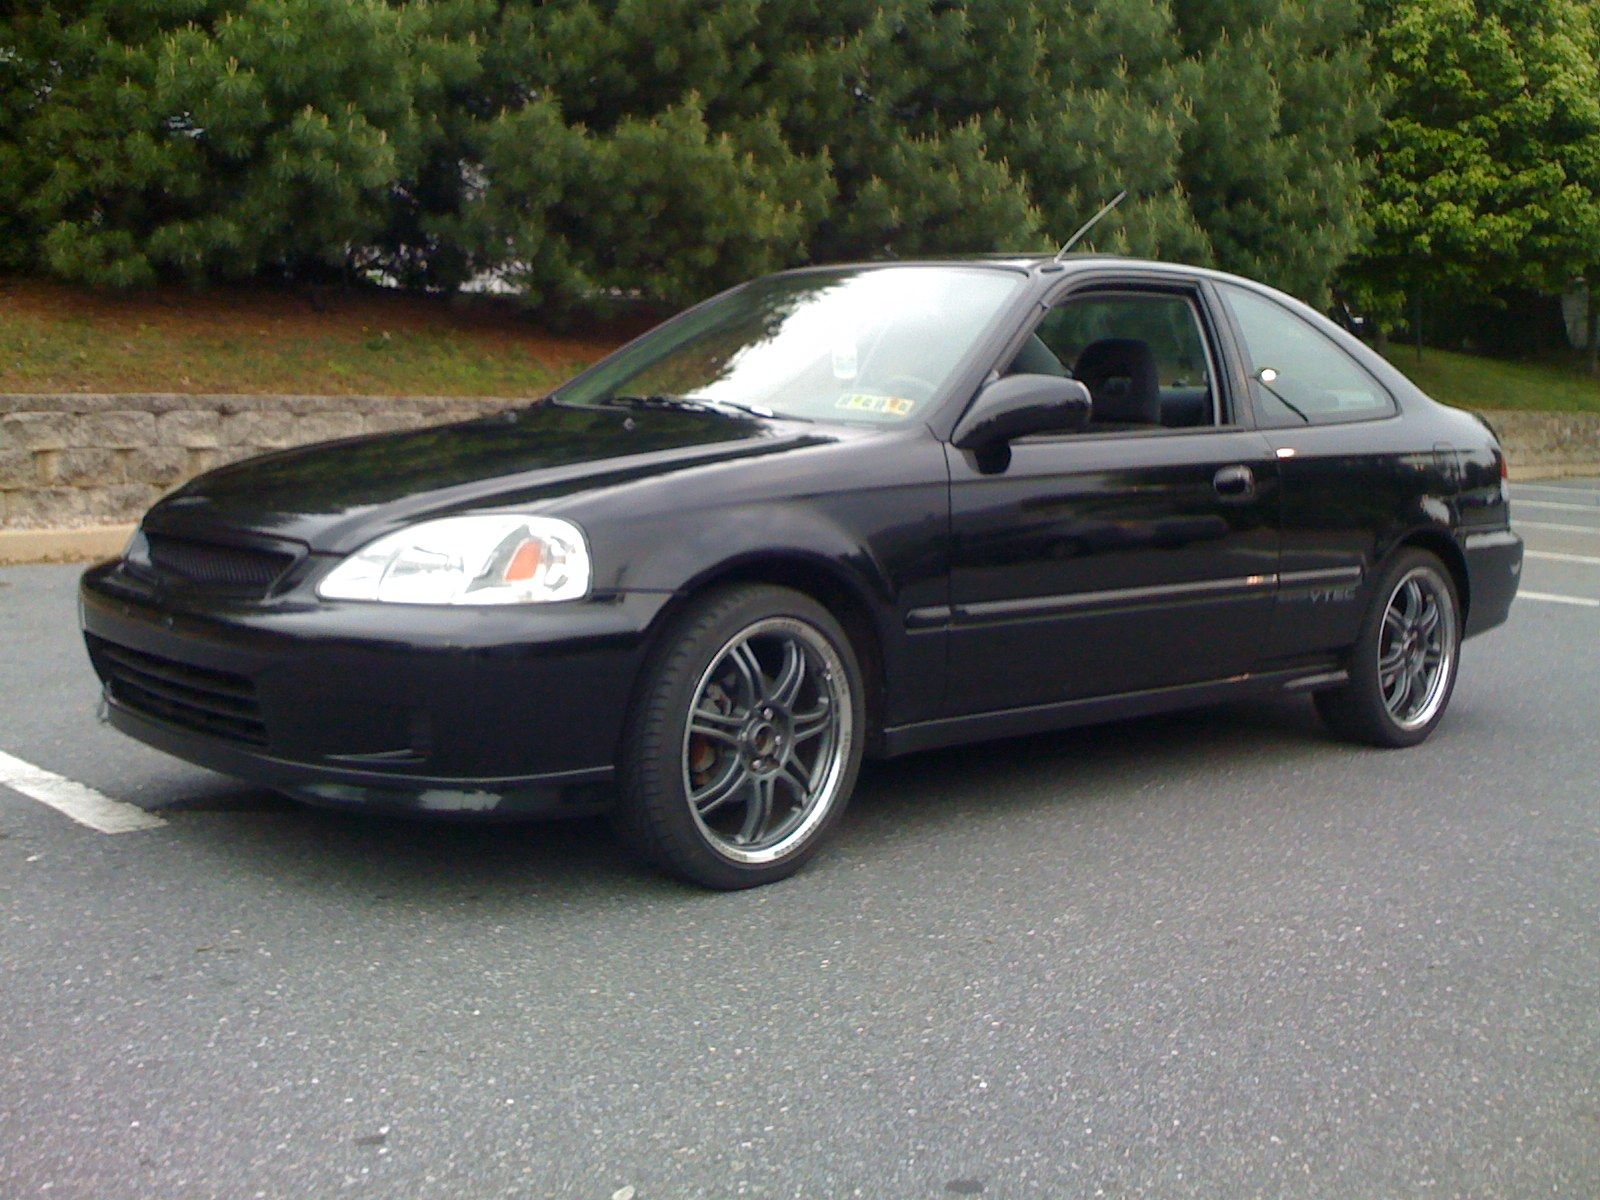 Honda Civic Si 2000 Black